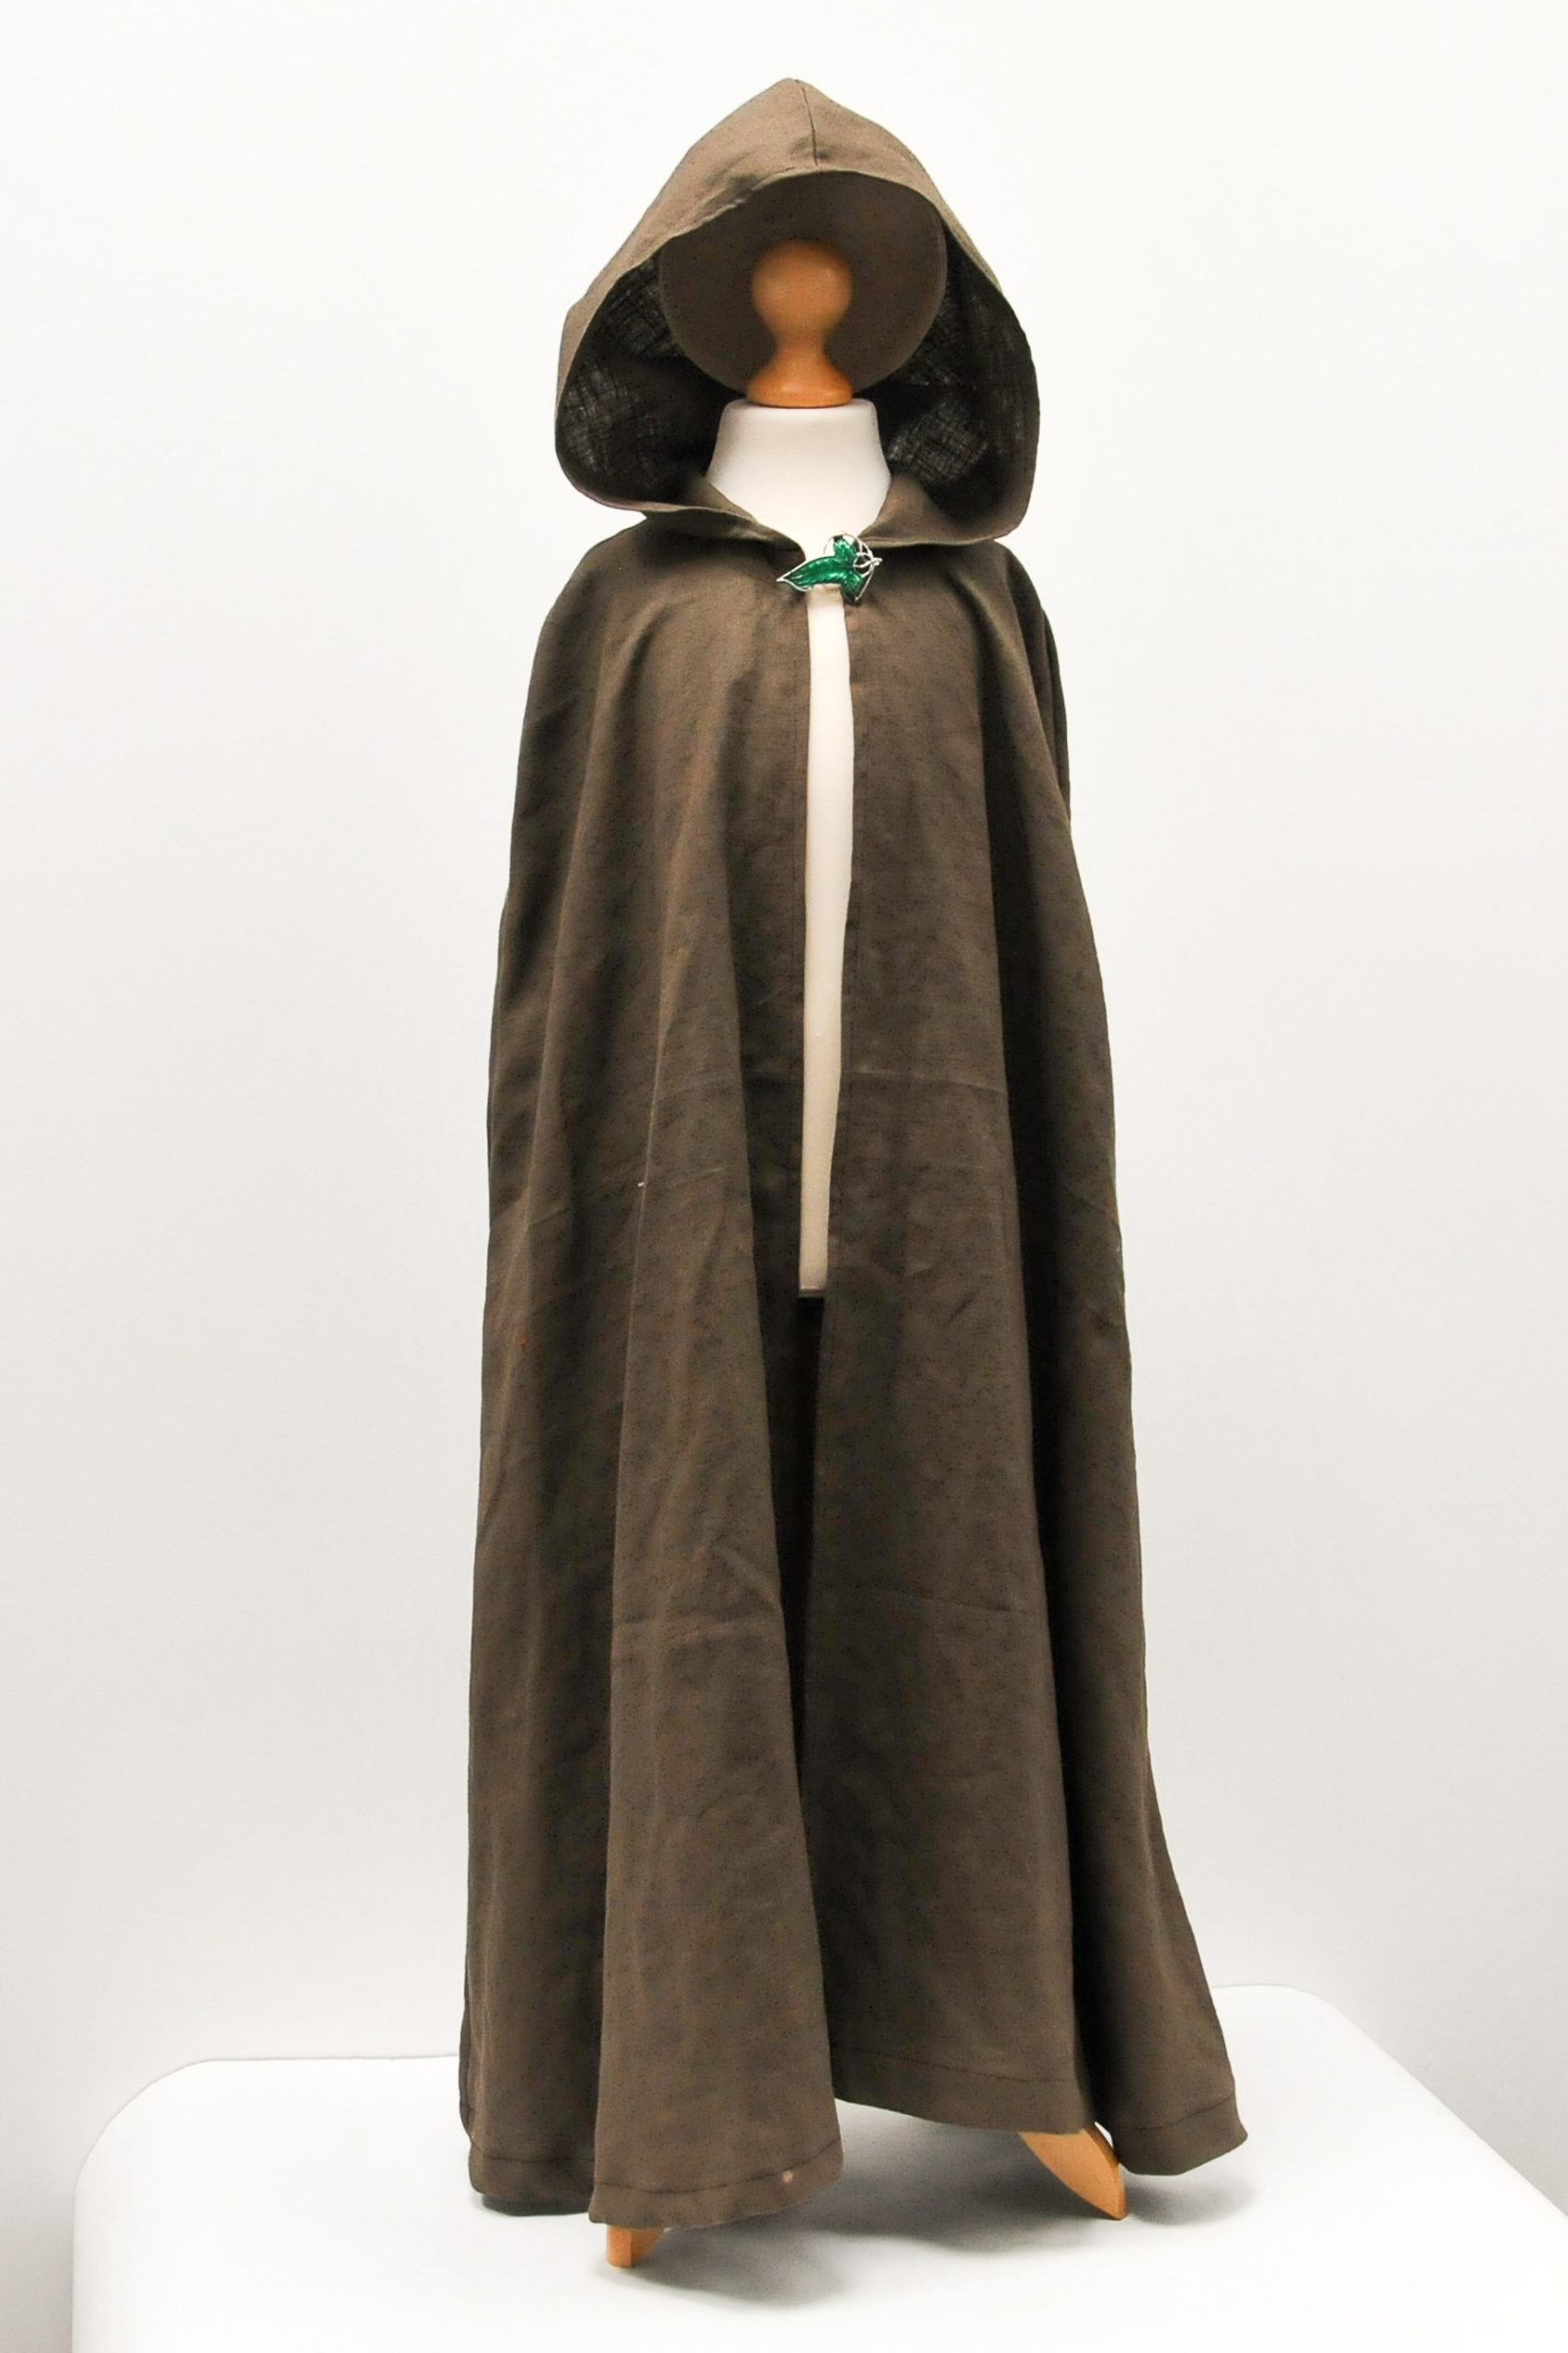 Leinen Herr der Ringe inspiriert Elfen Kostüm | Halloween Kinderkostüm